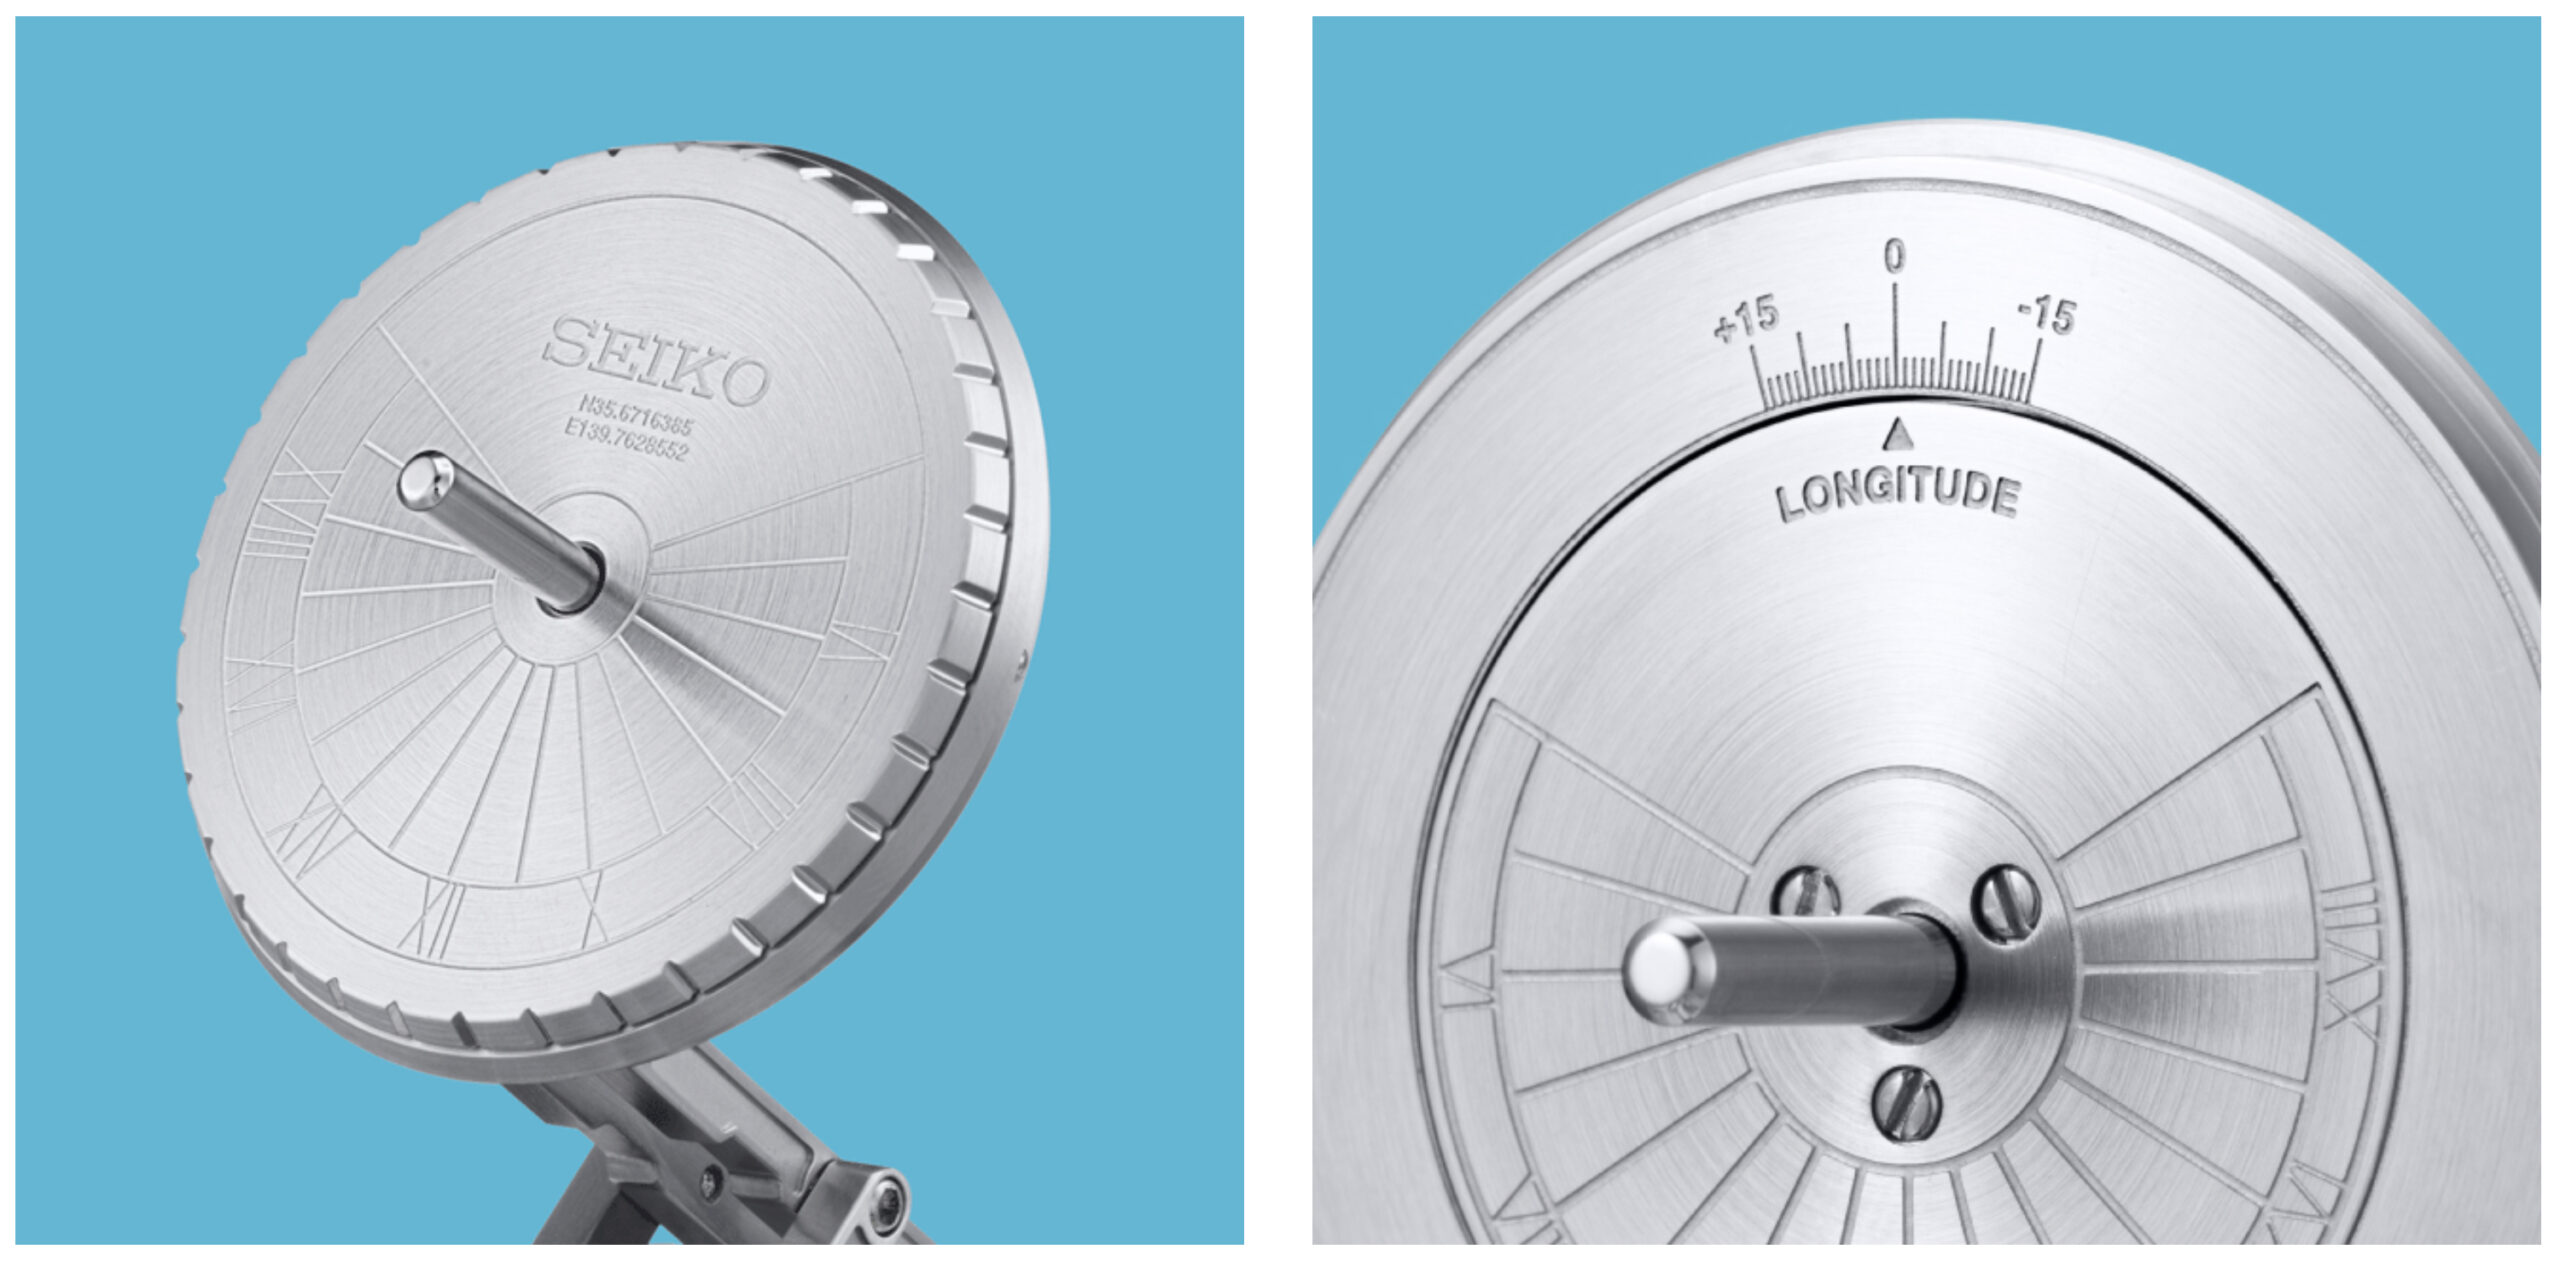 Семь потрясающих концептуальных часов Seiko на выставке Seiko 'Incredibly Specialized Watch Exhibition'